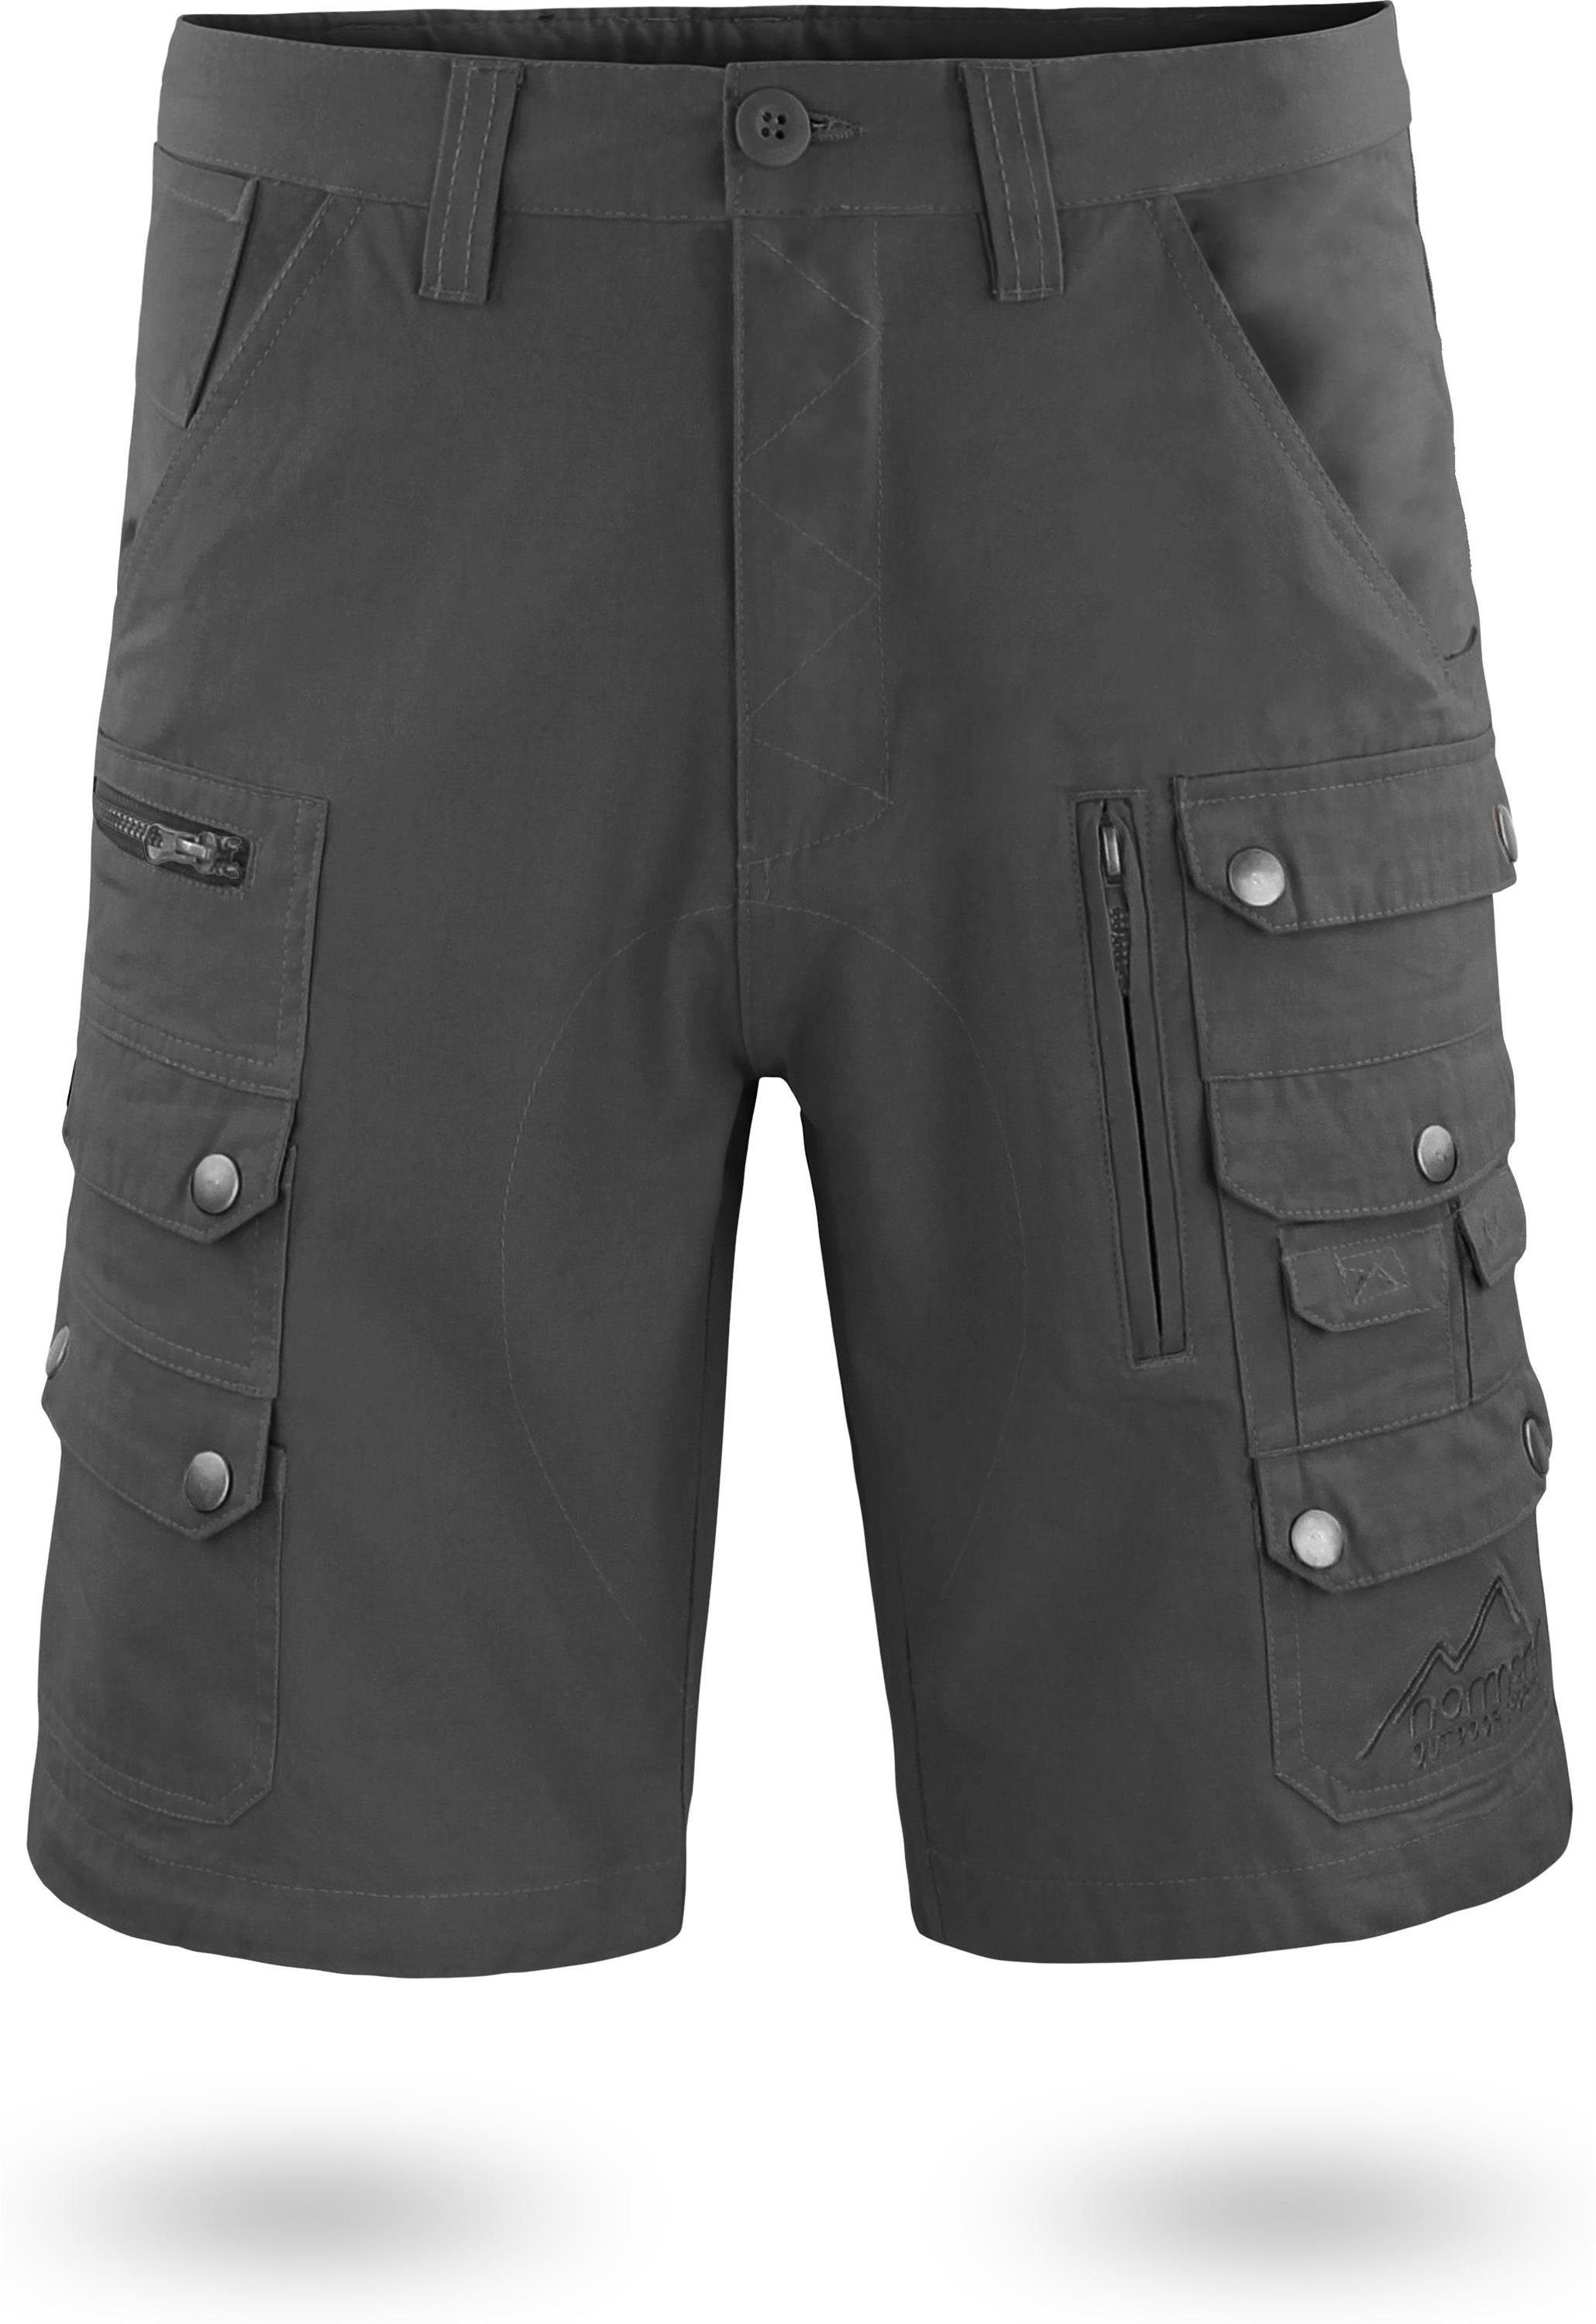 Cargo-Shorts kurze Taschen aus Anthrazit Mojave Bio-Baumwolle Shorts diversen Bermudas Herren Arbeitsshorts normani 100% Sommershorts mit